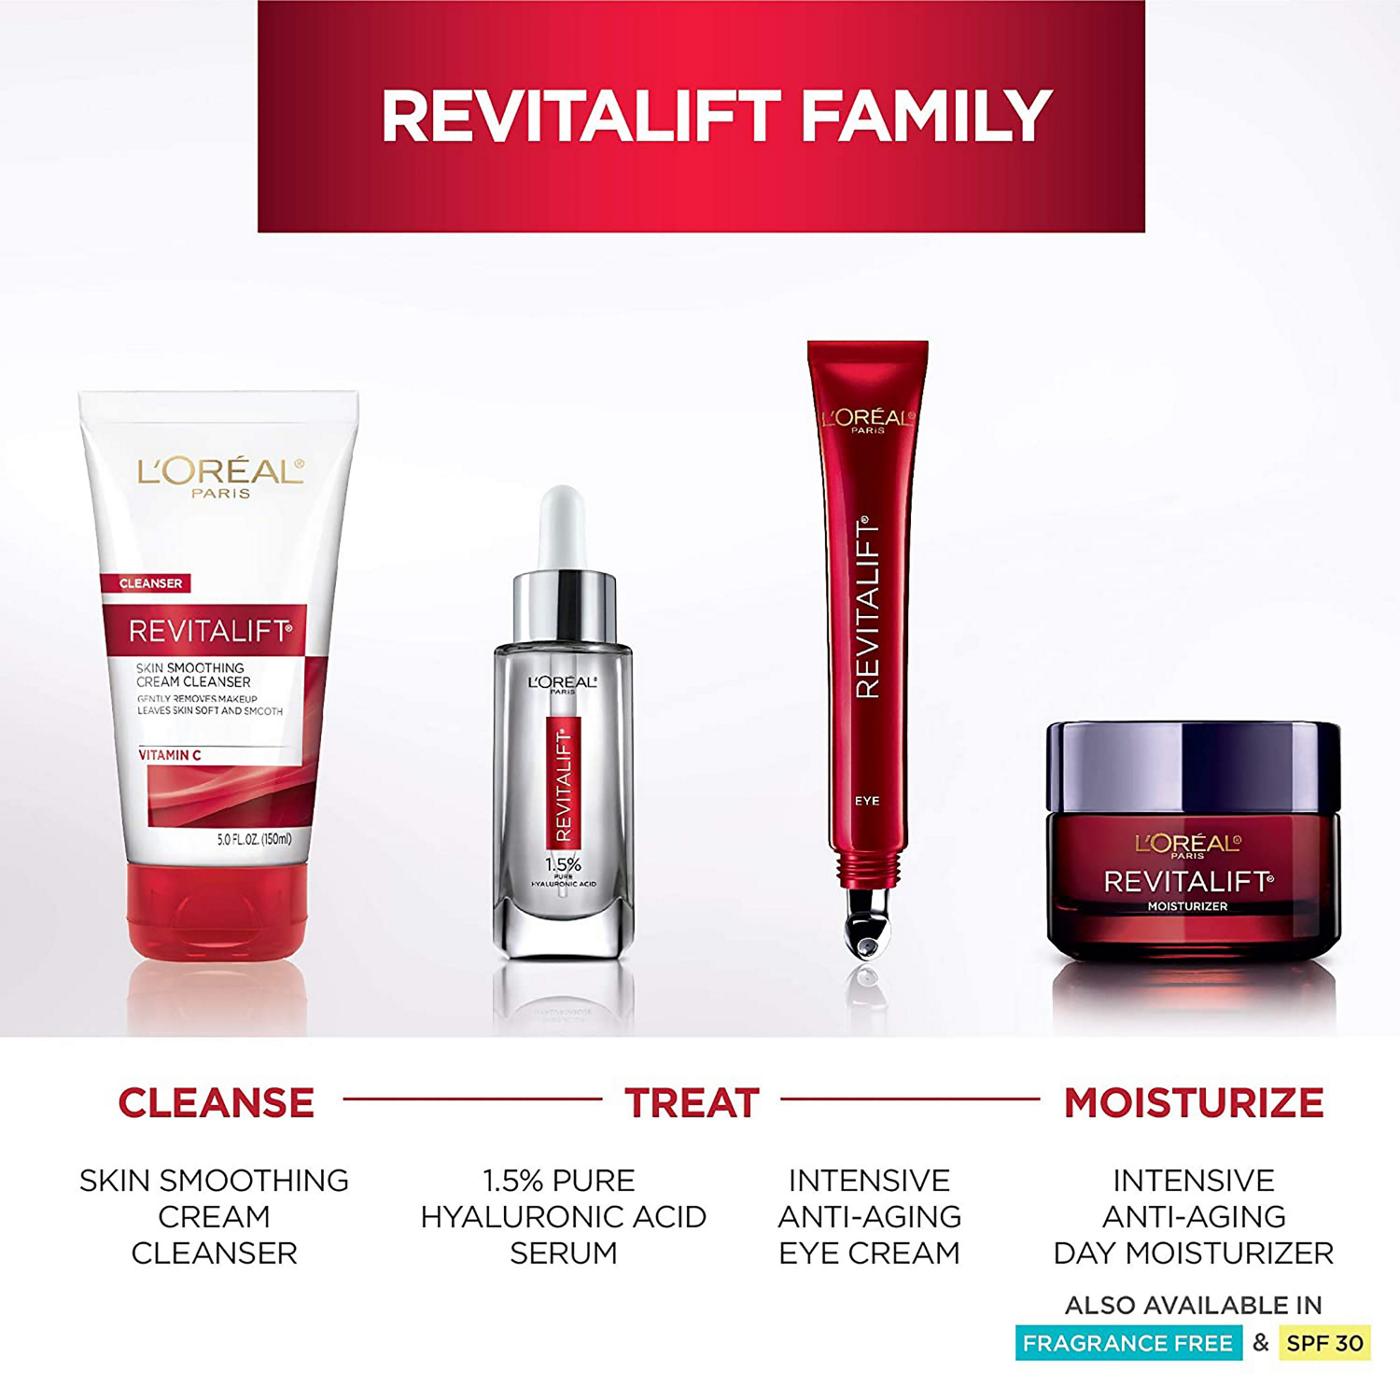 L'Oréal Paris Revitalift Triple Power Face Moisturizer, Fragrance Free; image 6 of 8